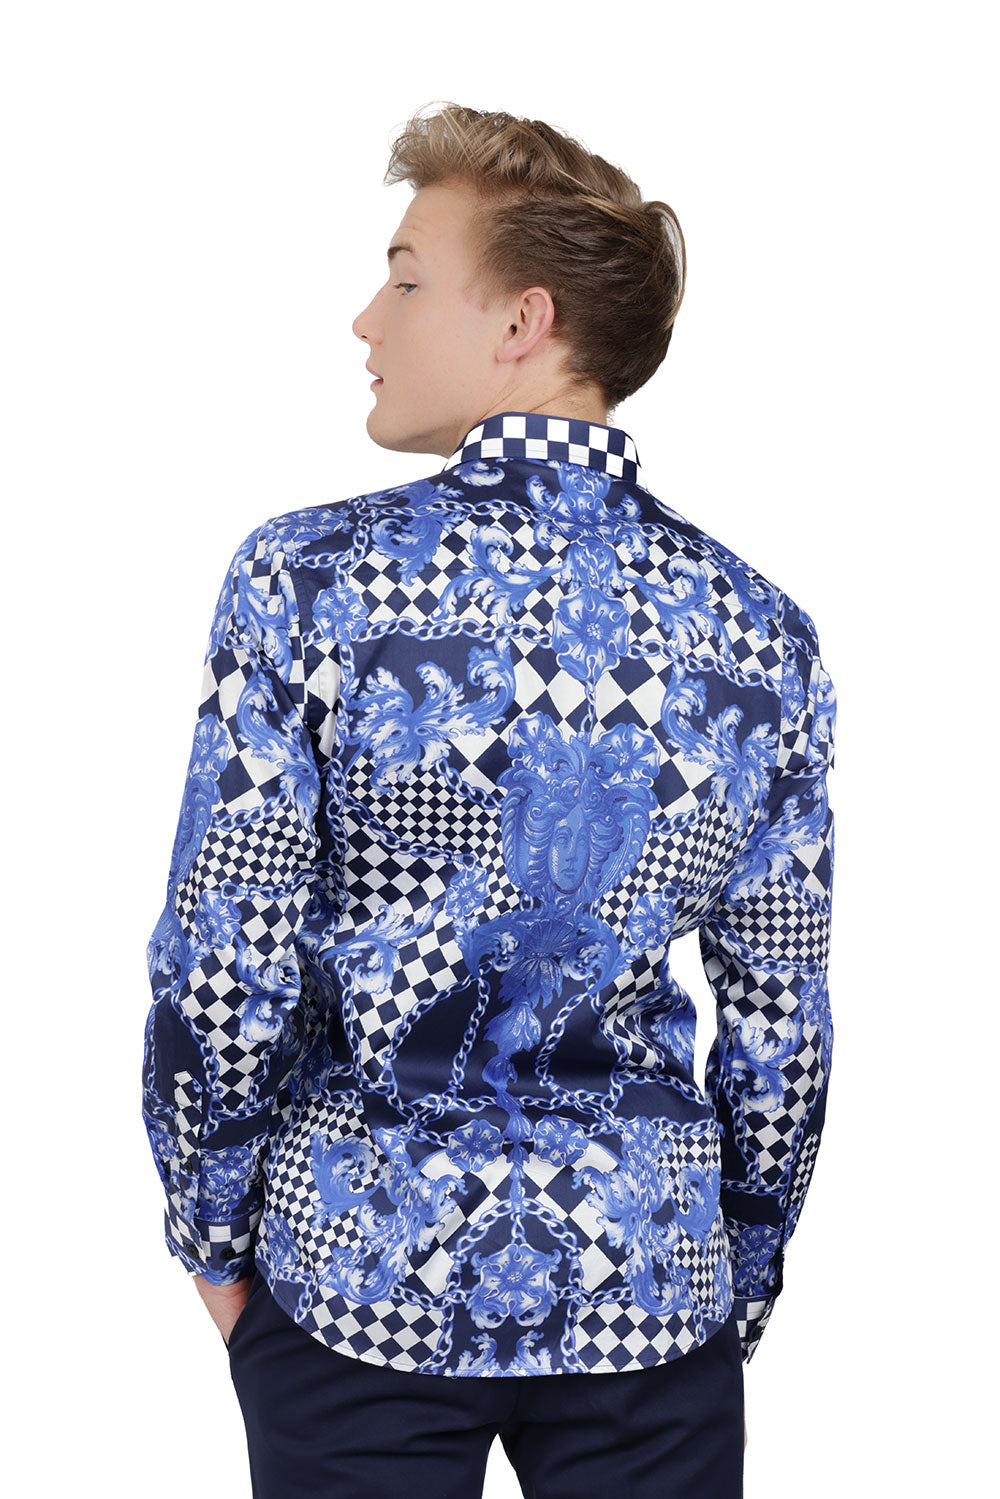 BARABAS Men's Medusa Floral Checkered Baroque Button Down Shirt SP02